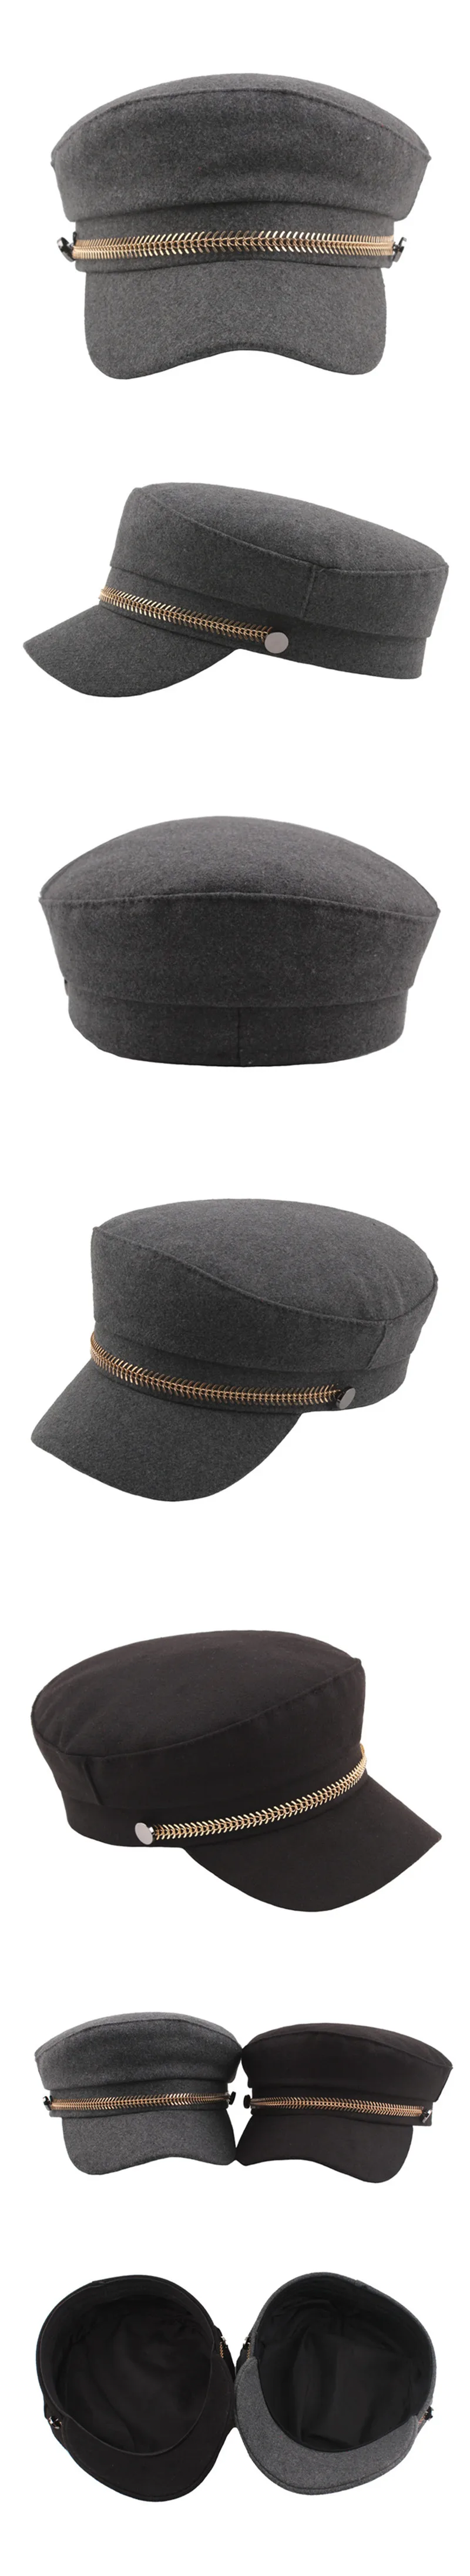 SILOQIN/Элегантные женские осенние армейские кепки на плоской подошве в стиле ретро с украшением золотистой цепочкой, модные брендовые женские зимние шапки